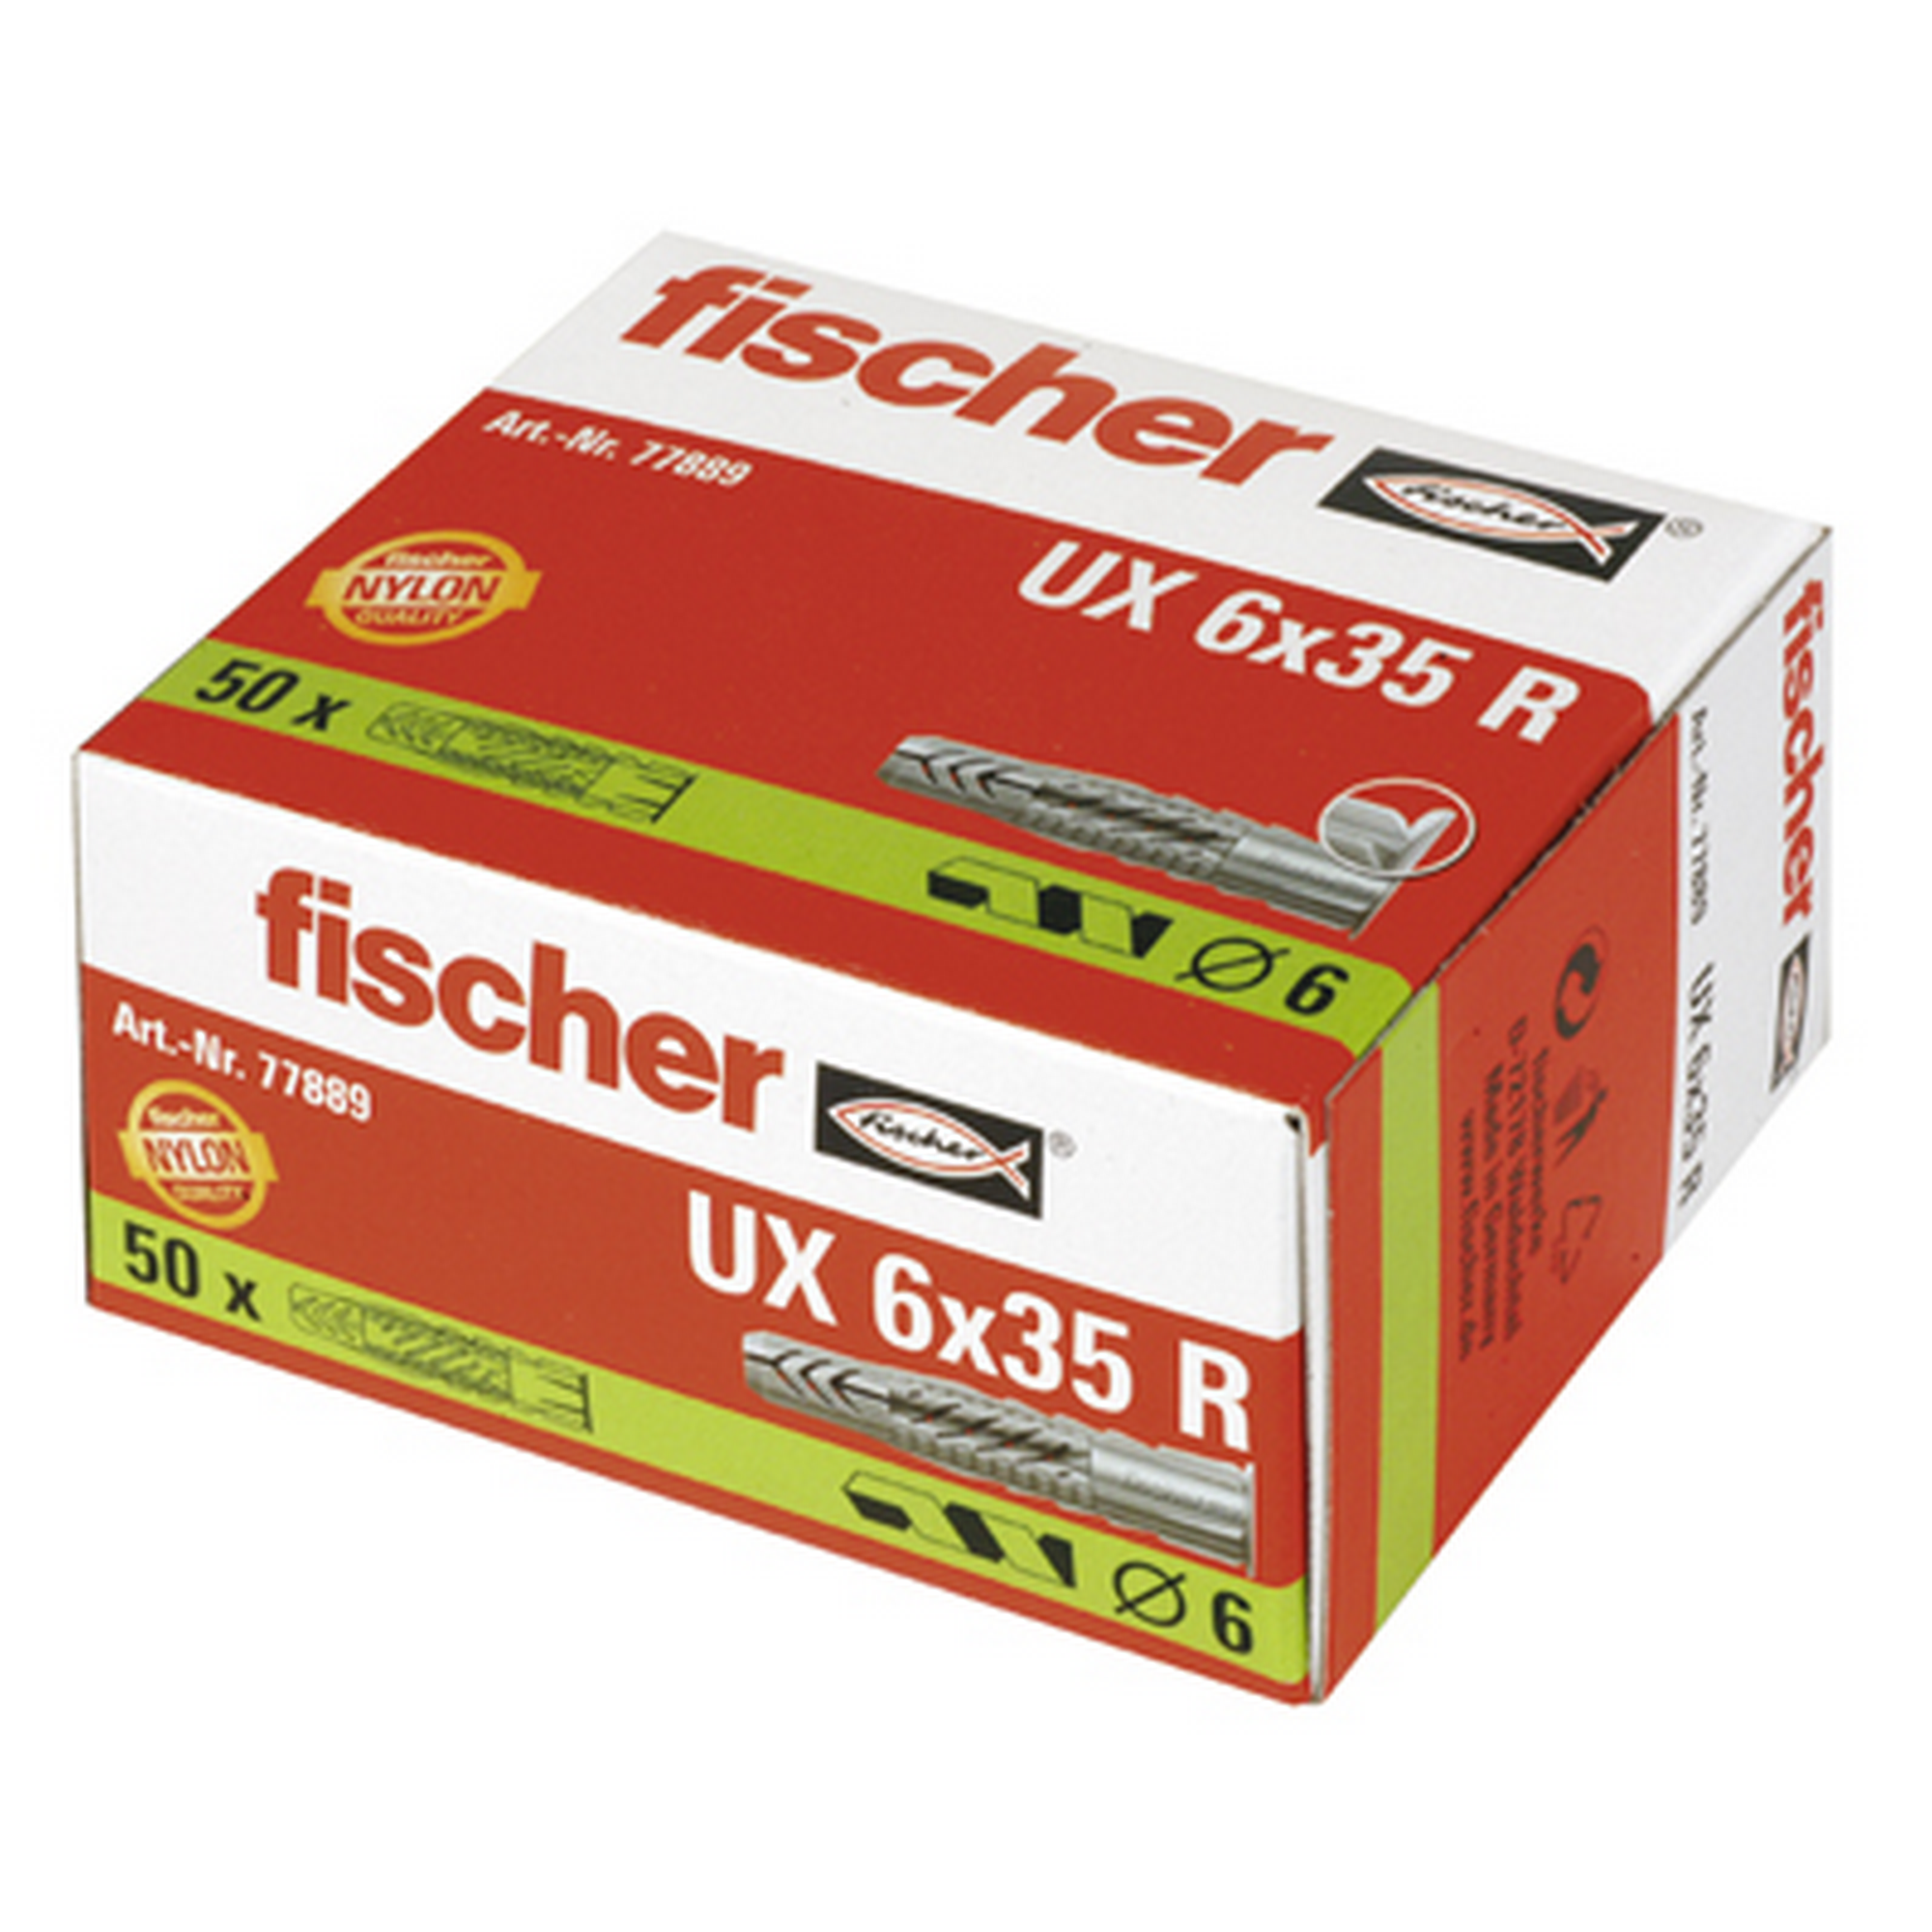 fischer Universaldübel UX 6 x 35 R mit Rand 50 Stück + product picture